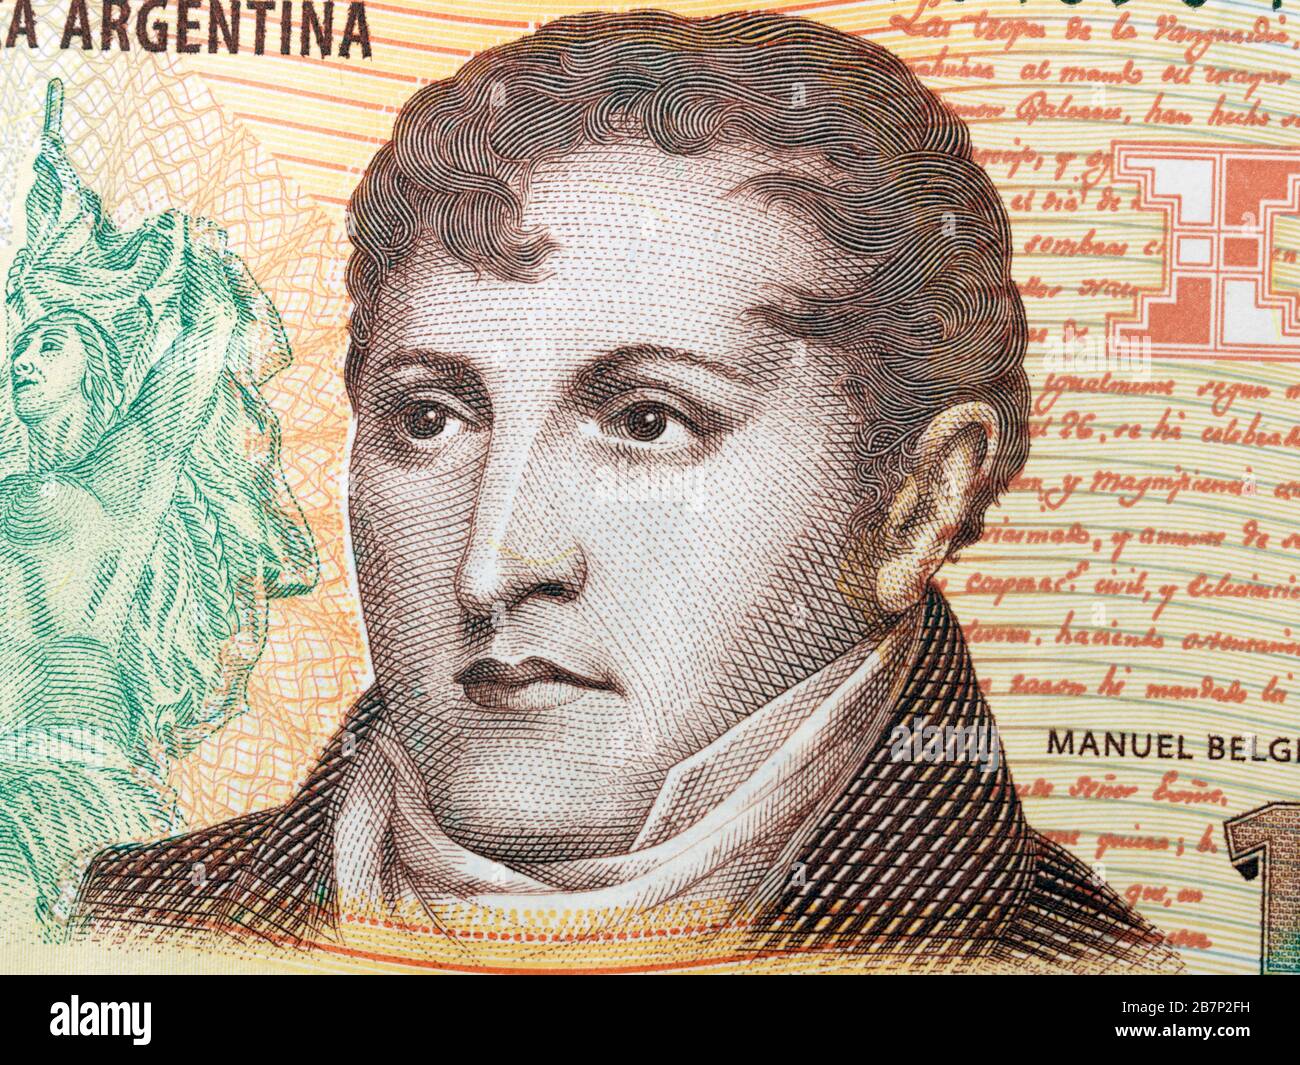 Banco de la República Argentina diez Peso Banknotte representando a Manuel Belgrano 1770-1820 figura política y general revolucionario que creó la Bandera Foto de stock